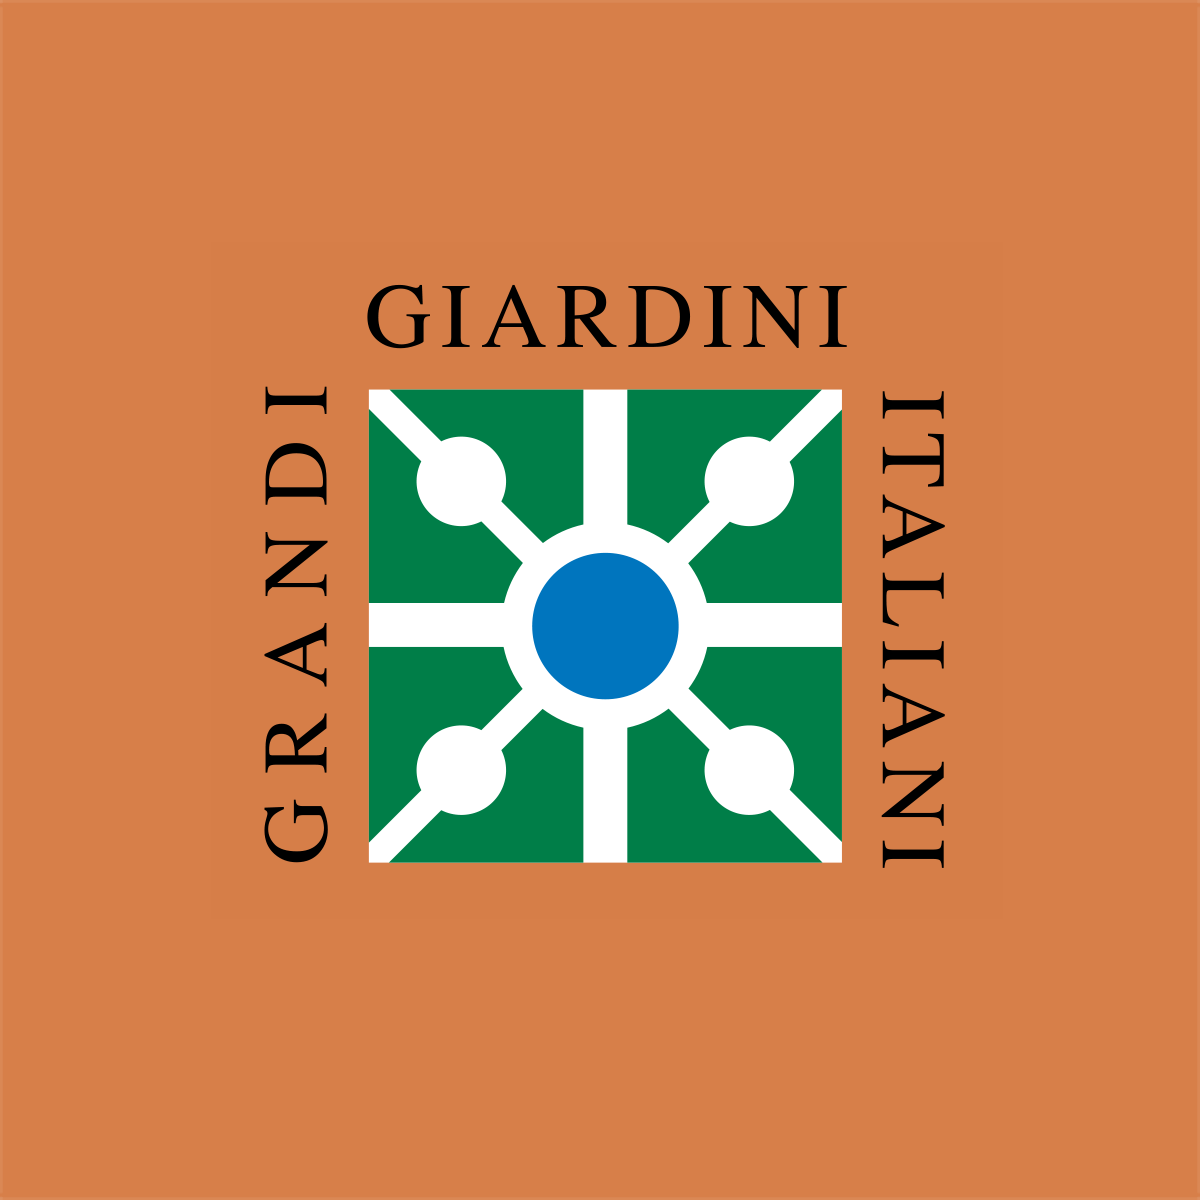 (c) Grandigiardini.it